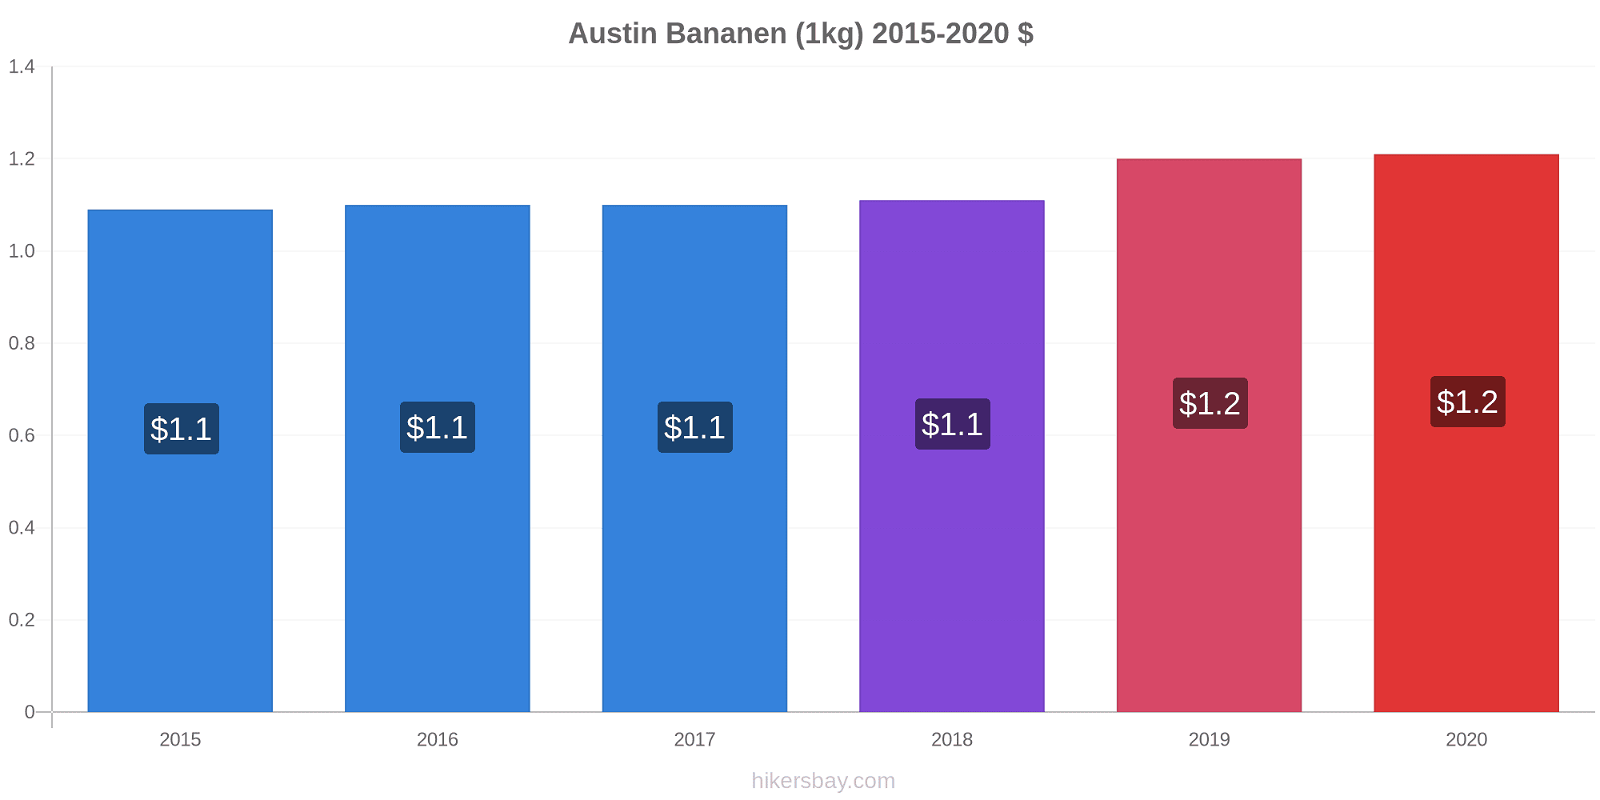 Austin prijswijzigingen Banaan (1kg) hikersbay.com